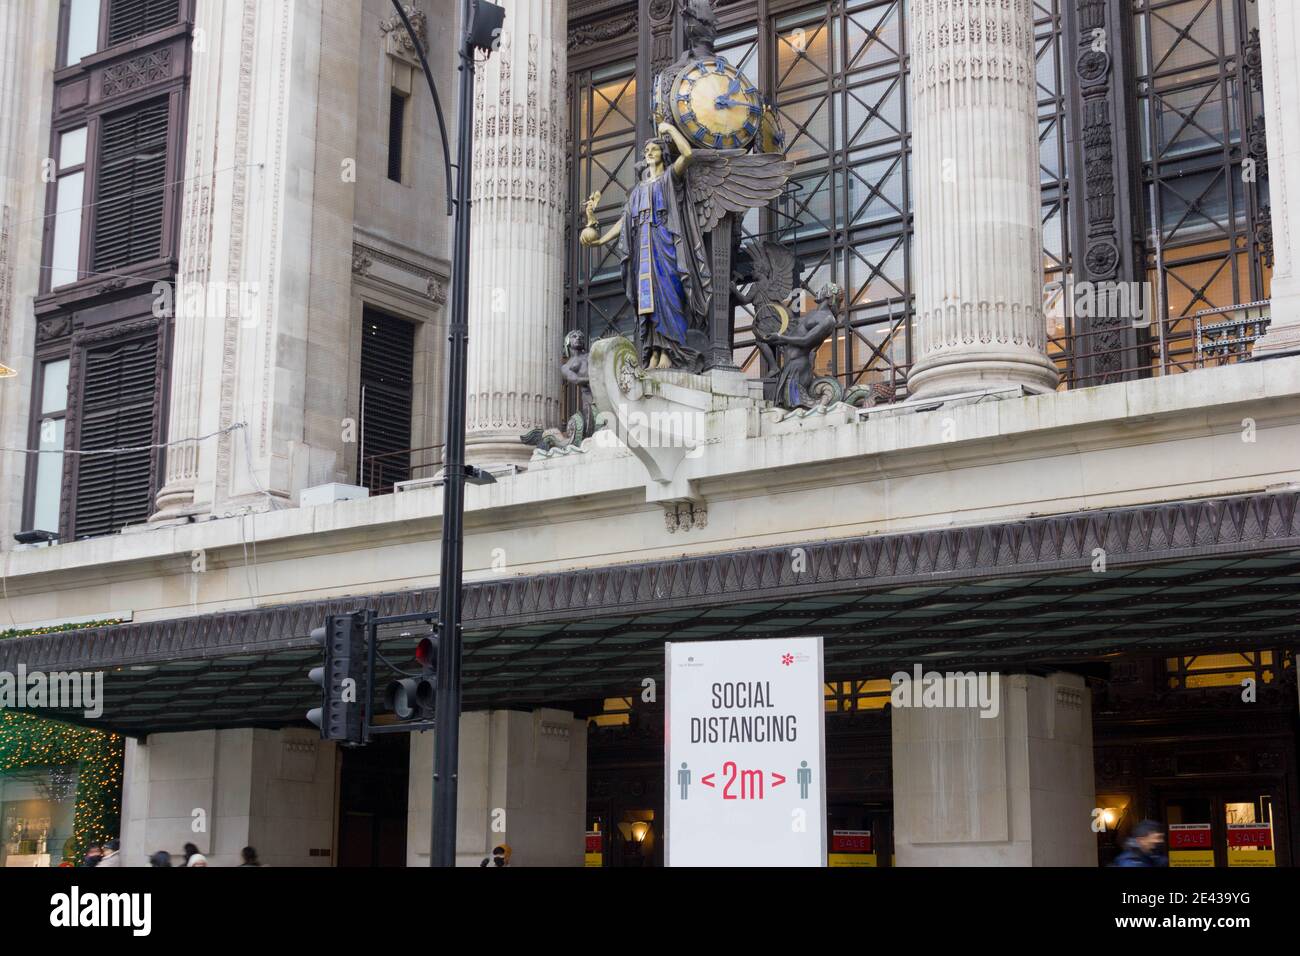 Signe de distance sociale à l'extérieur du grand magasin selfridges Londres Angleterre Royaume-Uni Banque D'Images